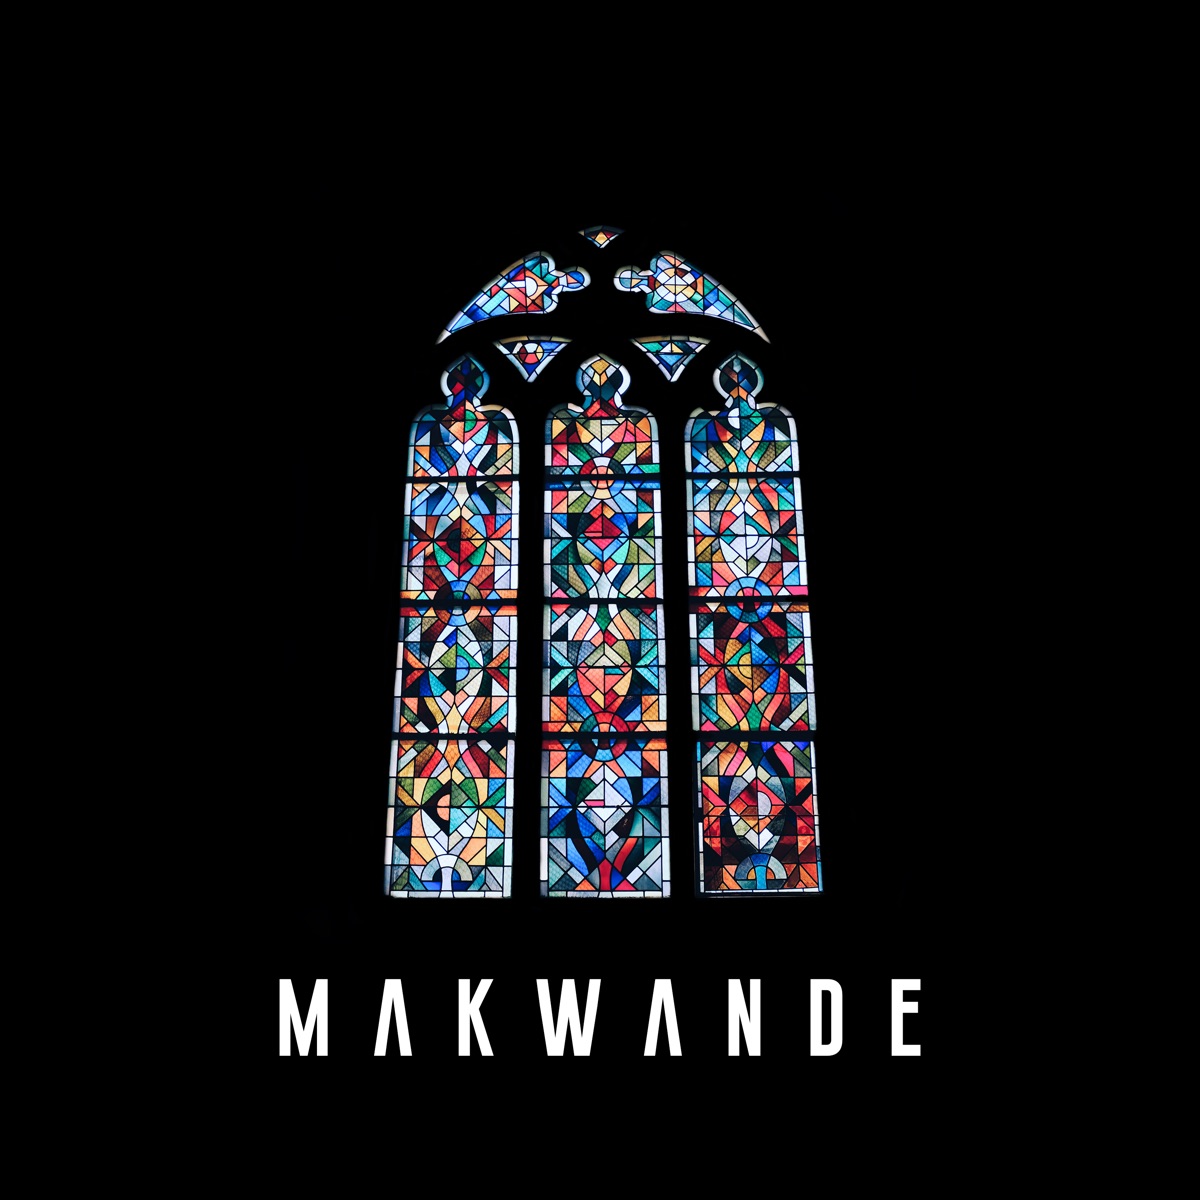 MP3: Makwa – Remember